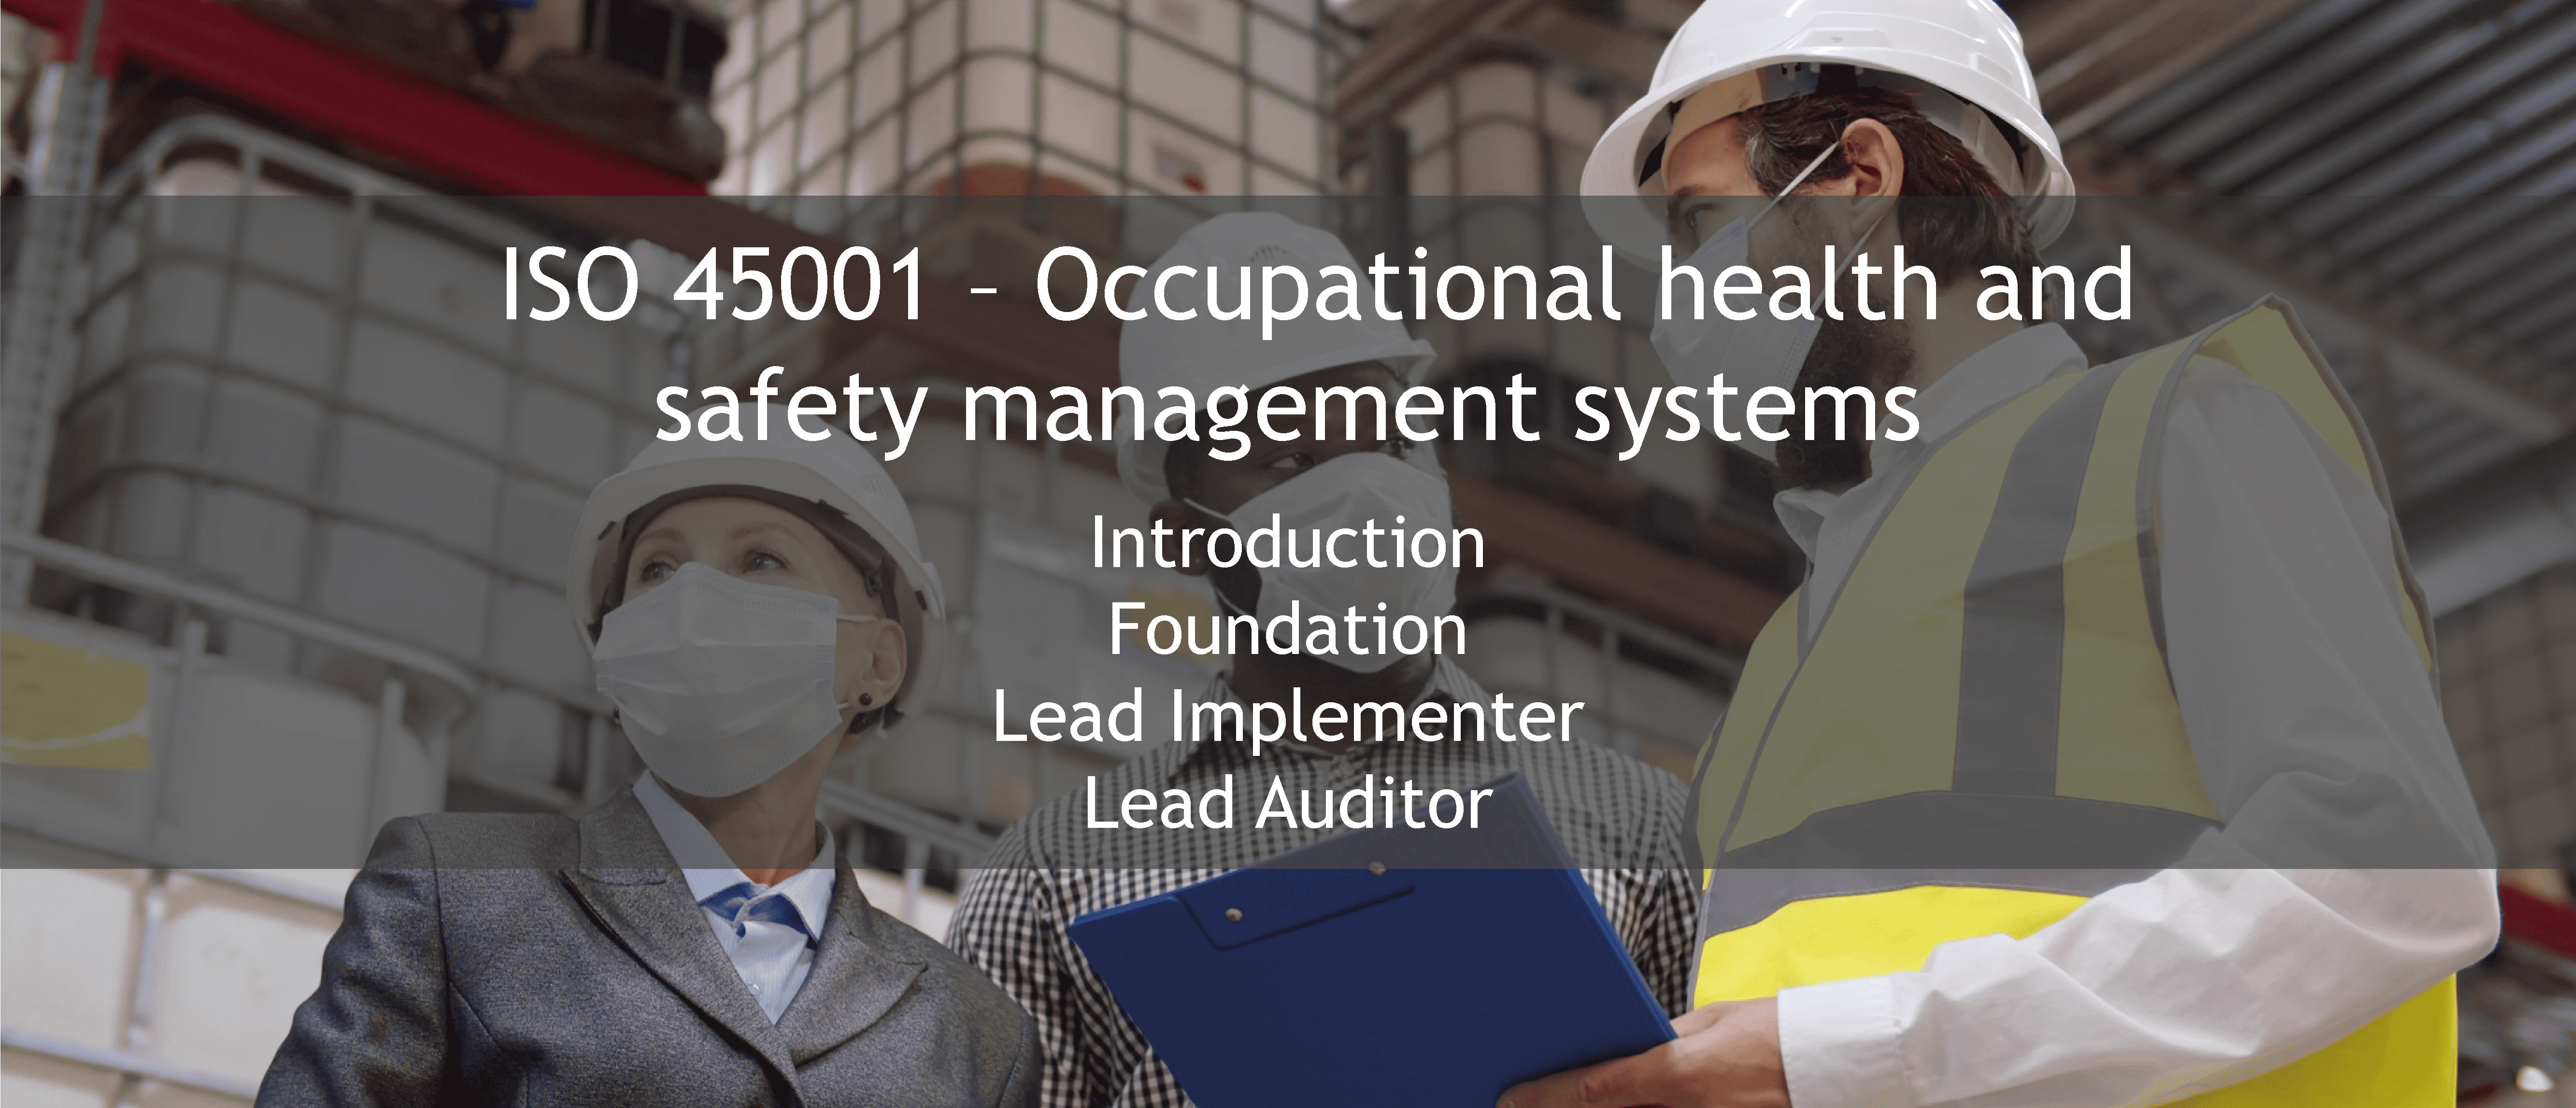 ISO 45001 training offer - ISO 45001 Systèmes de management de la santé et de la sécurité au travail